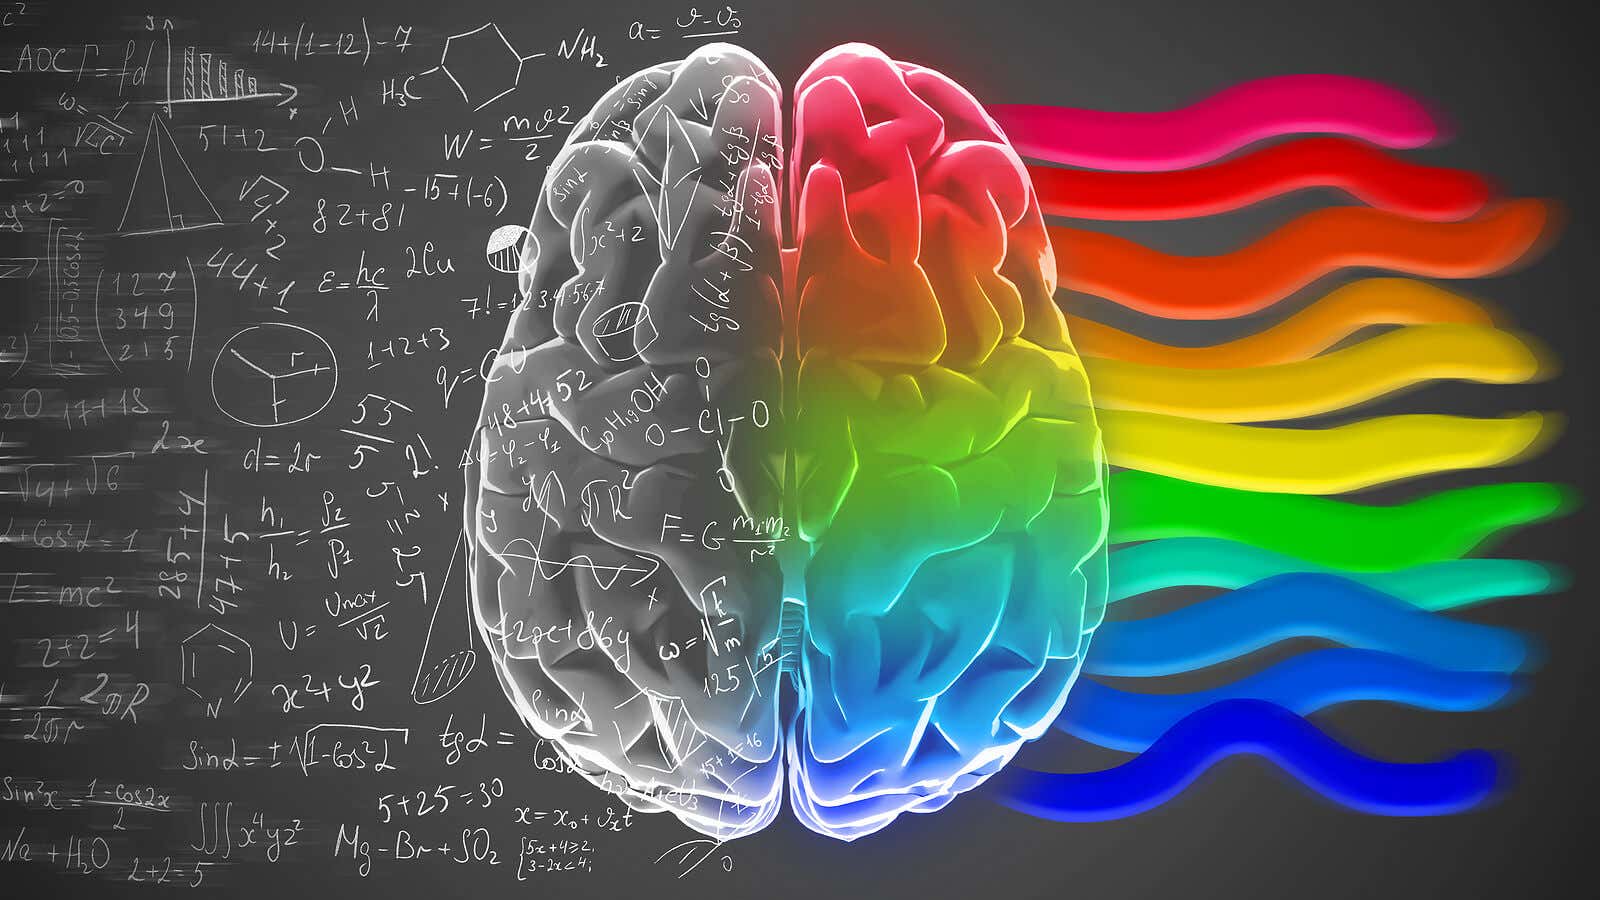 Hemisferios cerebrales y personalidad: ¿un mito?